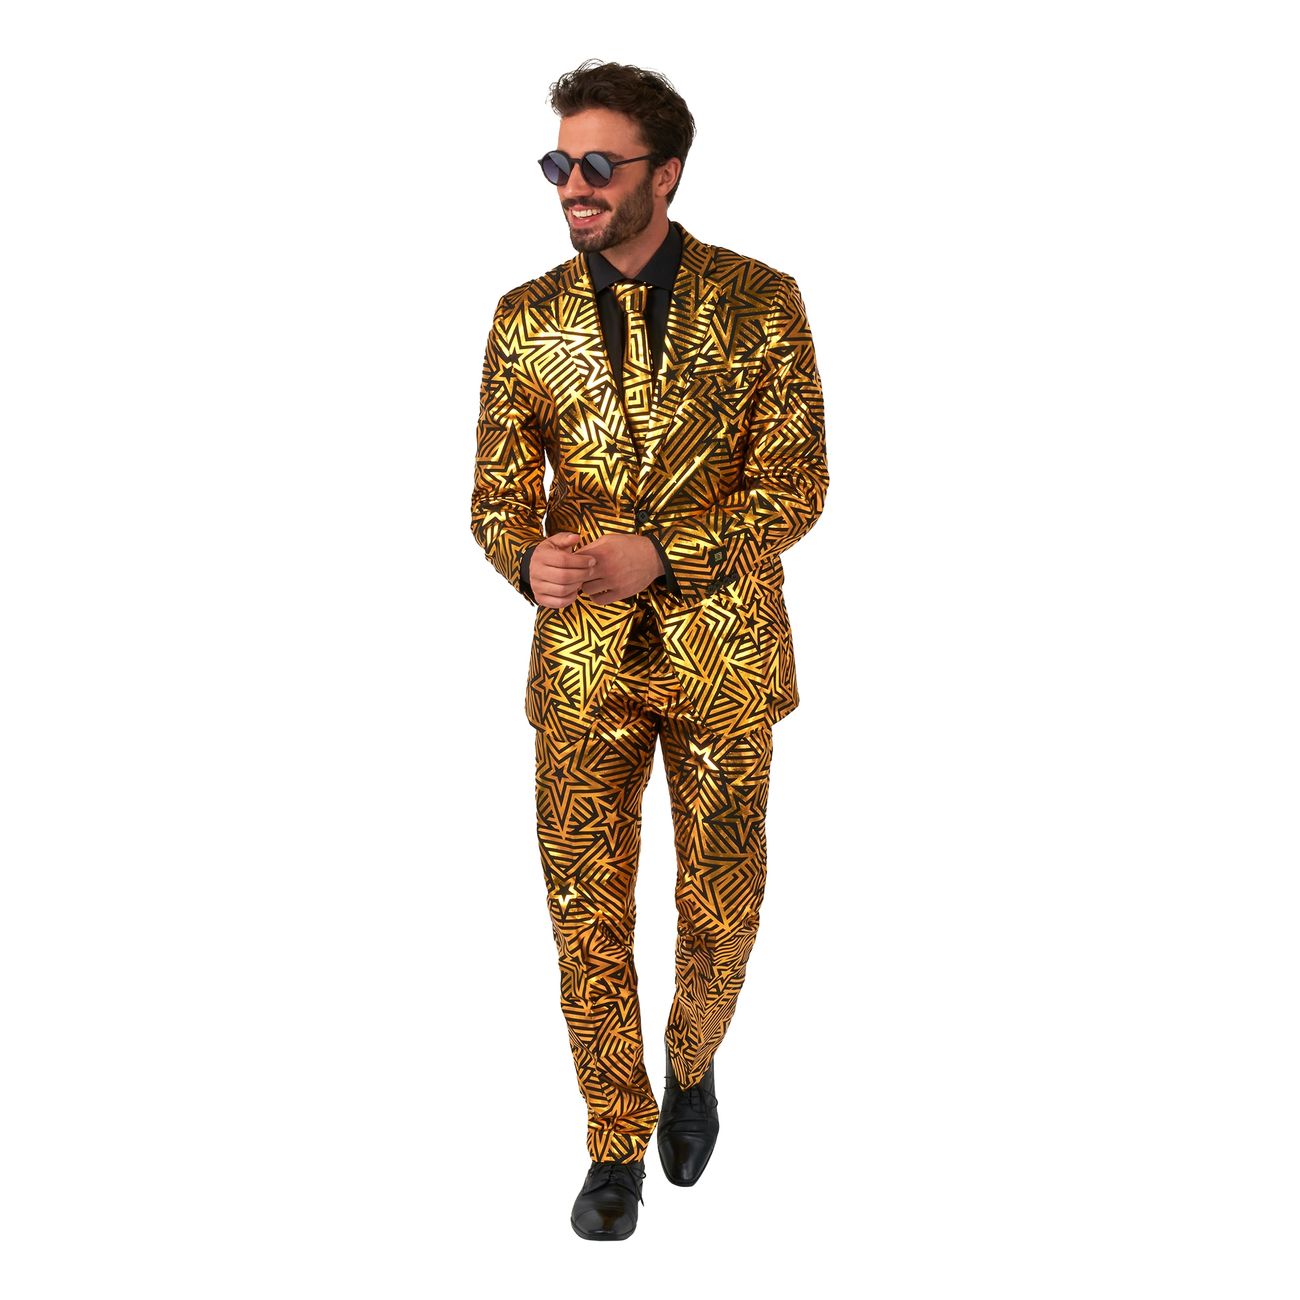 opposuits-golden-geo-star-kostym-100045-1